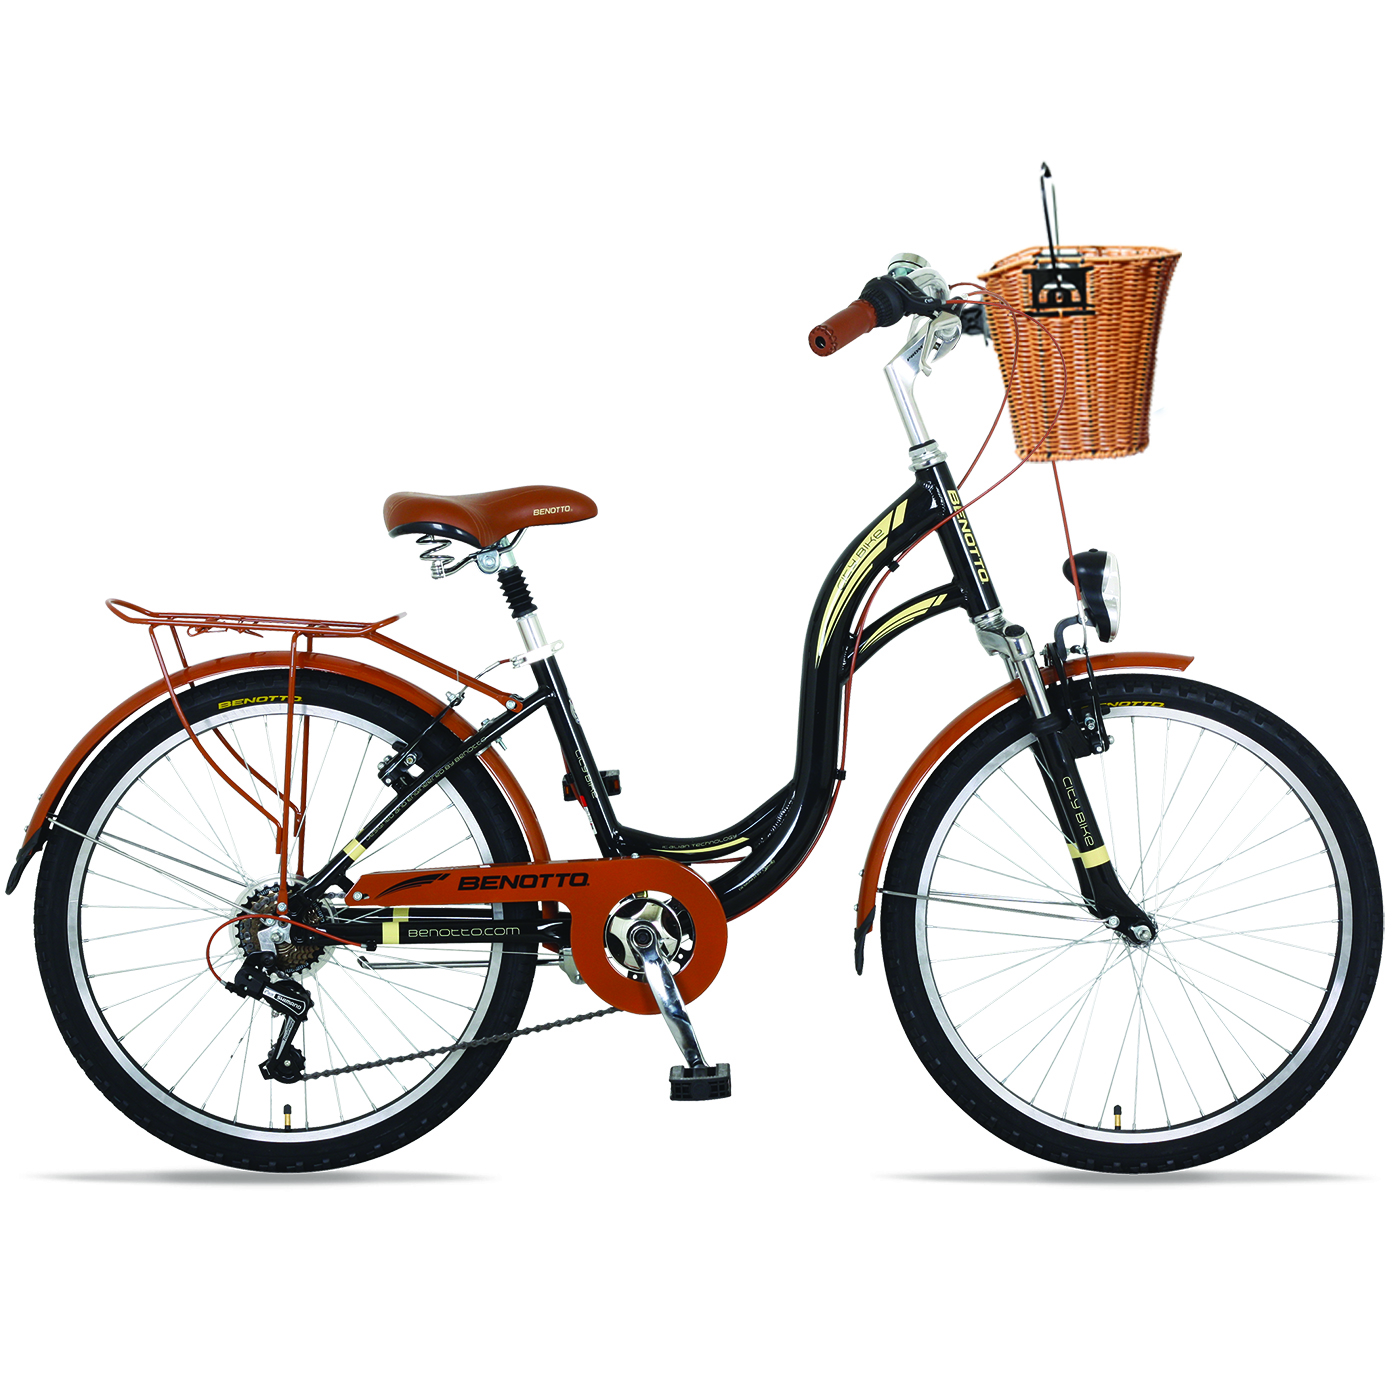 Bicicleta BENOTTO City CITY BIKE R24 7V. Mujer Sunrace Frenos ”V” Aluminio Negro Talla:UN